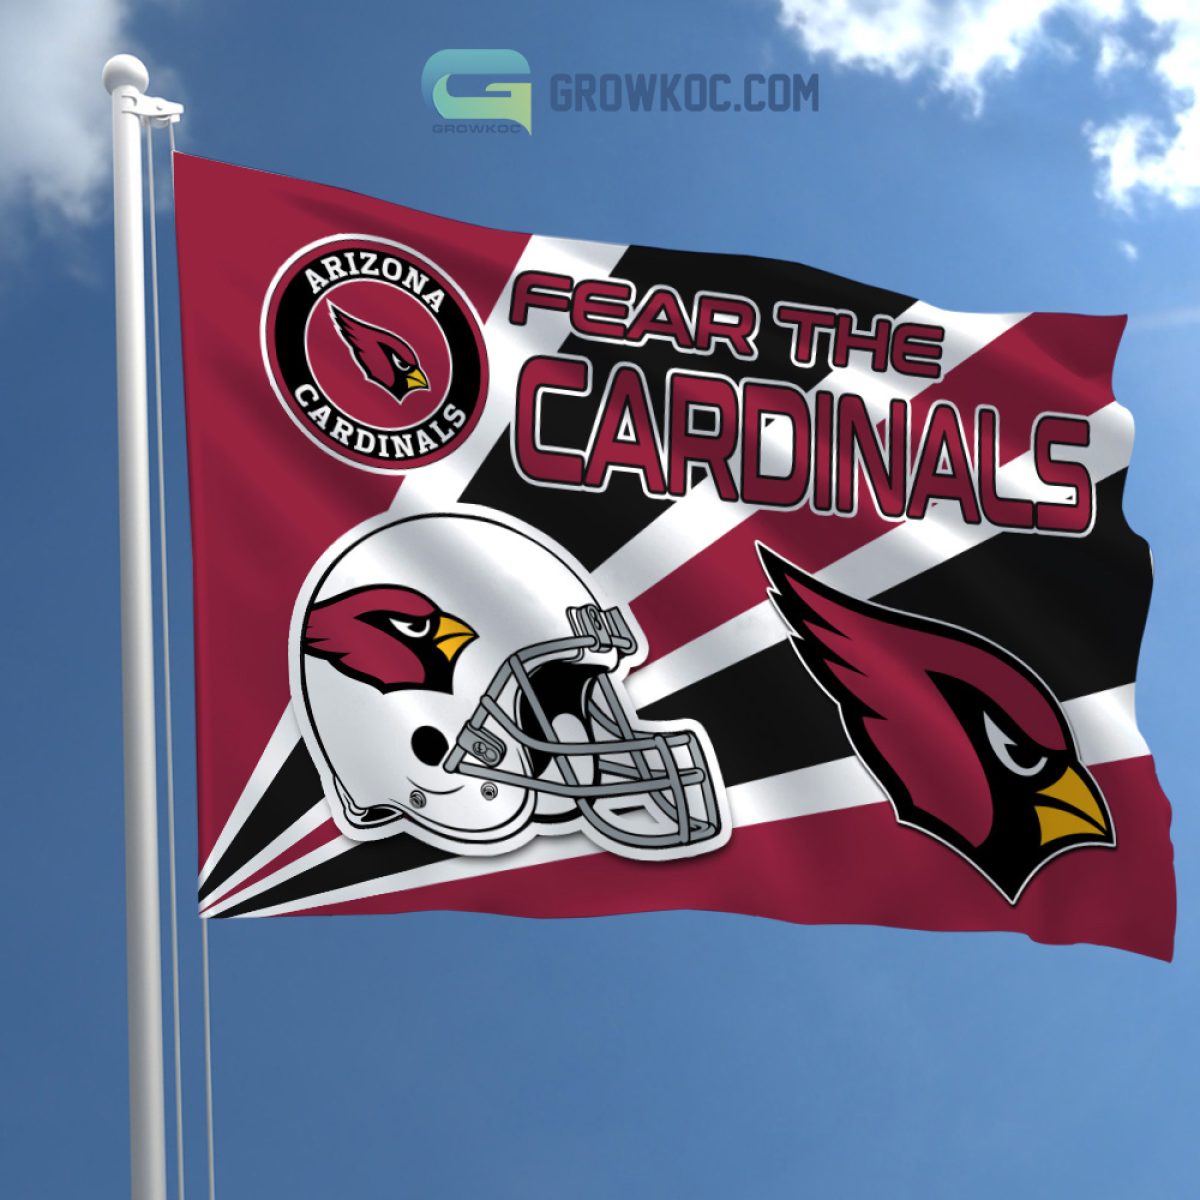 St. Louis Cardinals MLB Personalized Mix Baseball Jersey - Growkoc